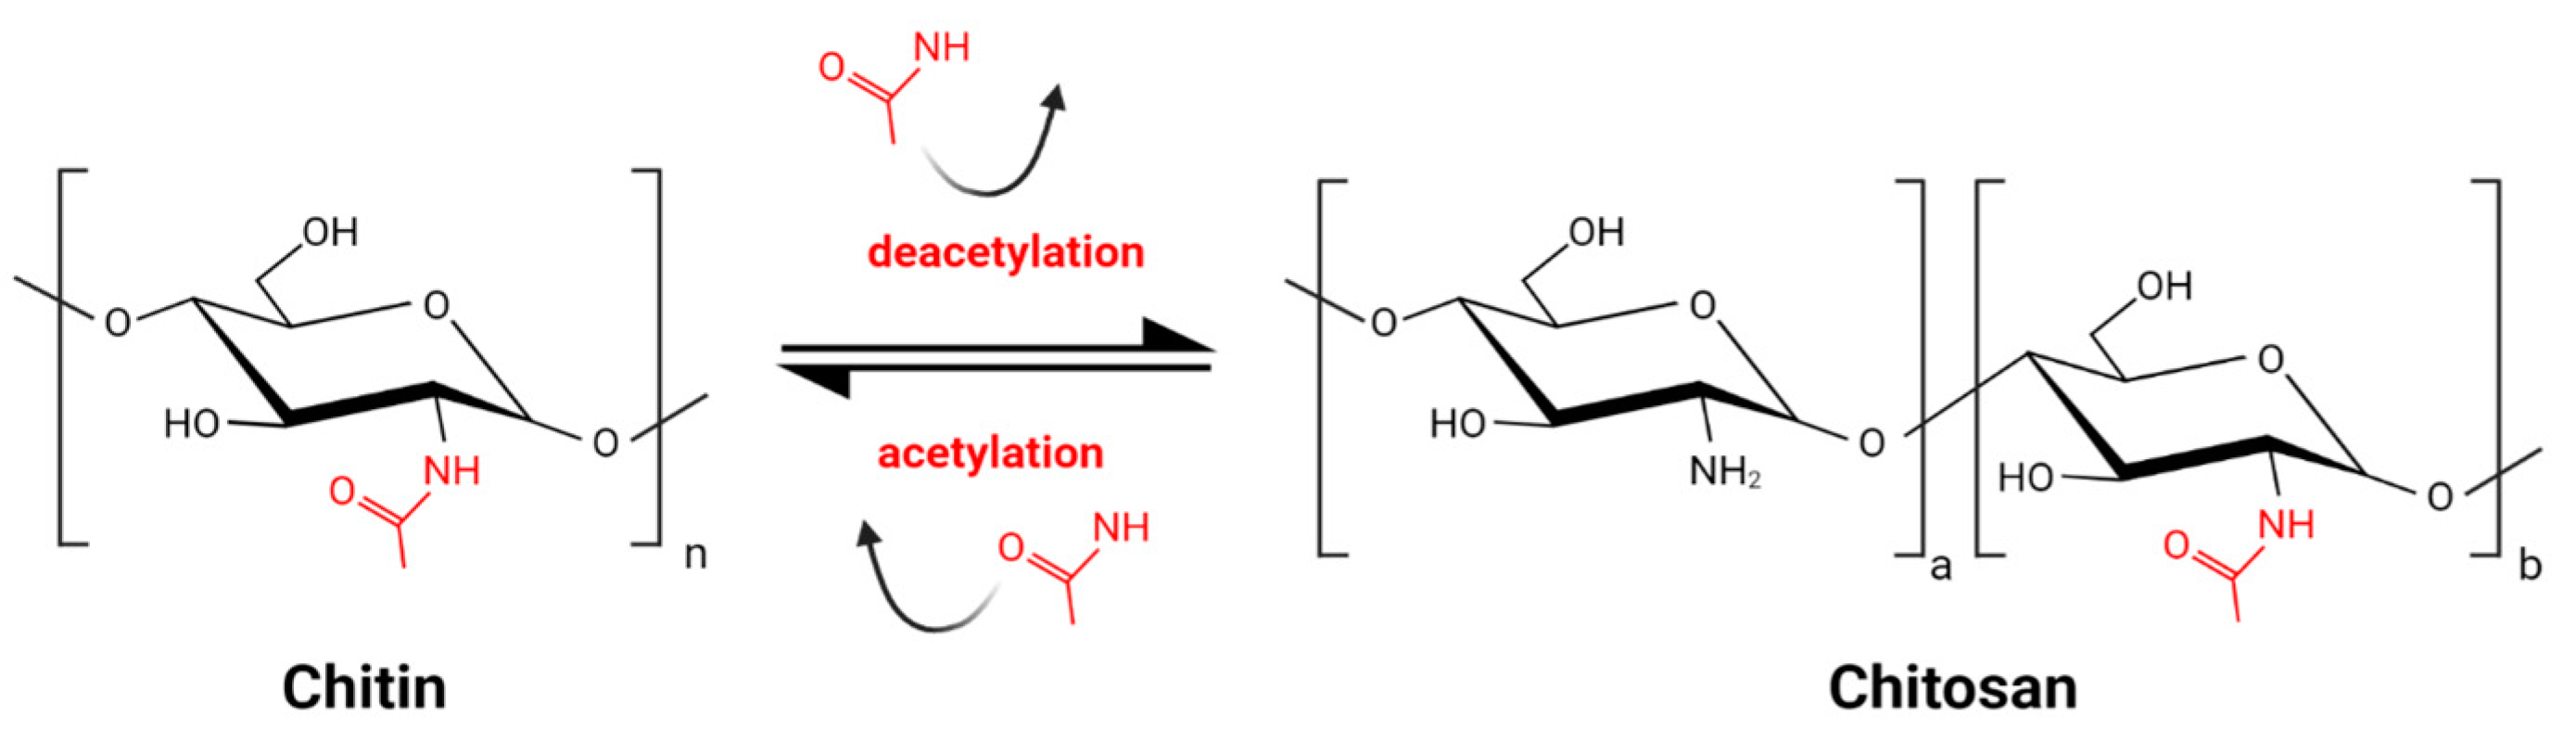 deacetylation reaction